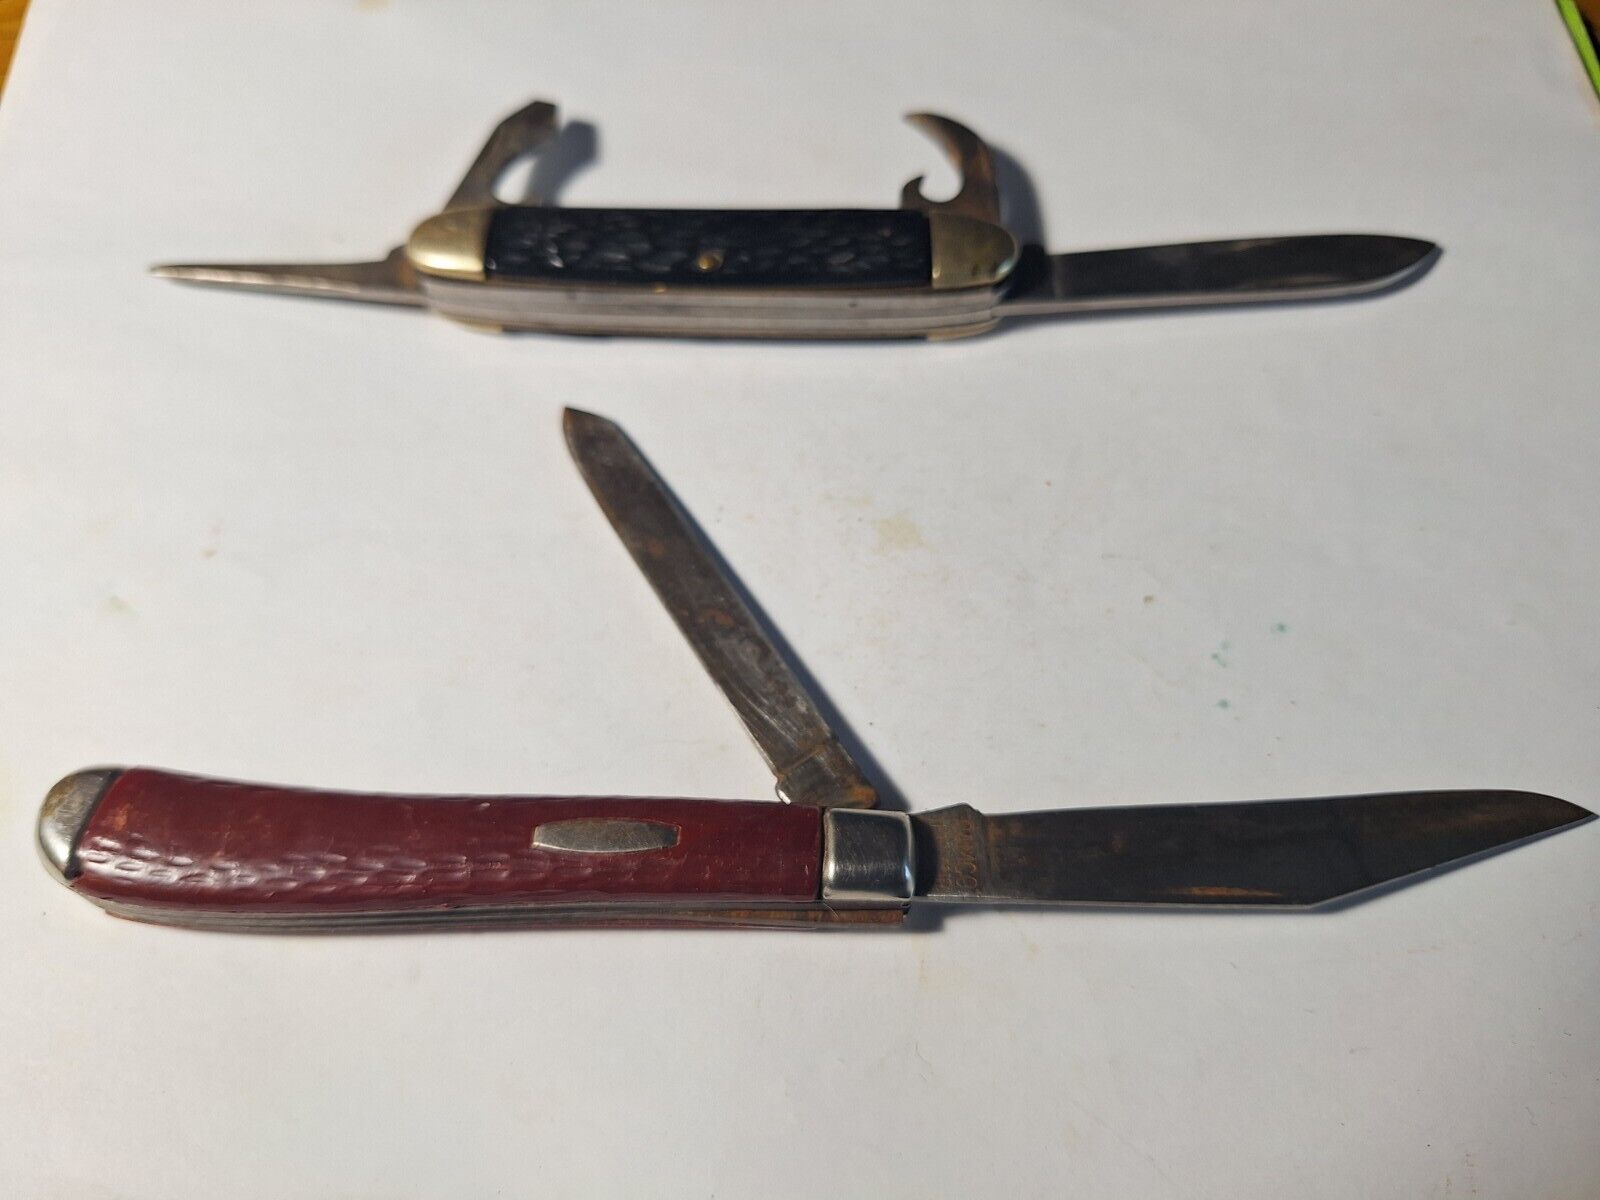 2 Vintage CAMCO Pocket Knives - 1 Multi Blade